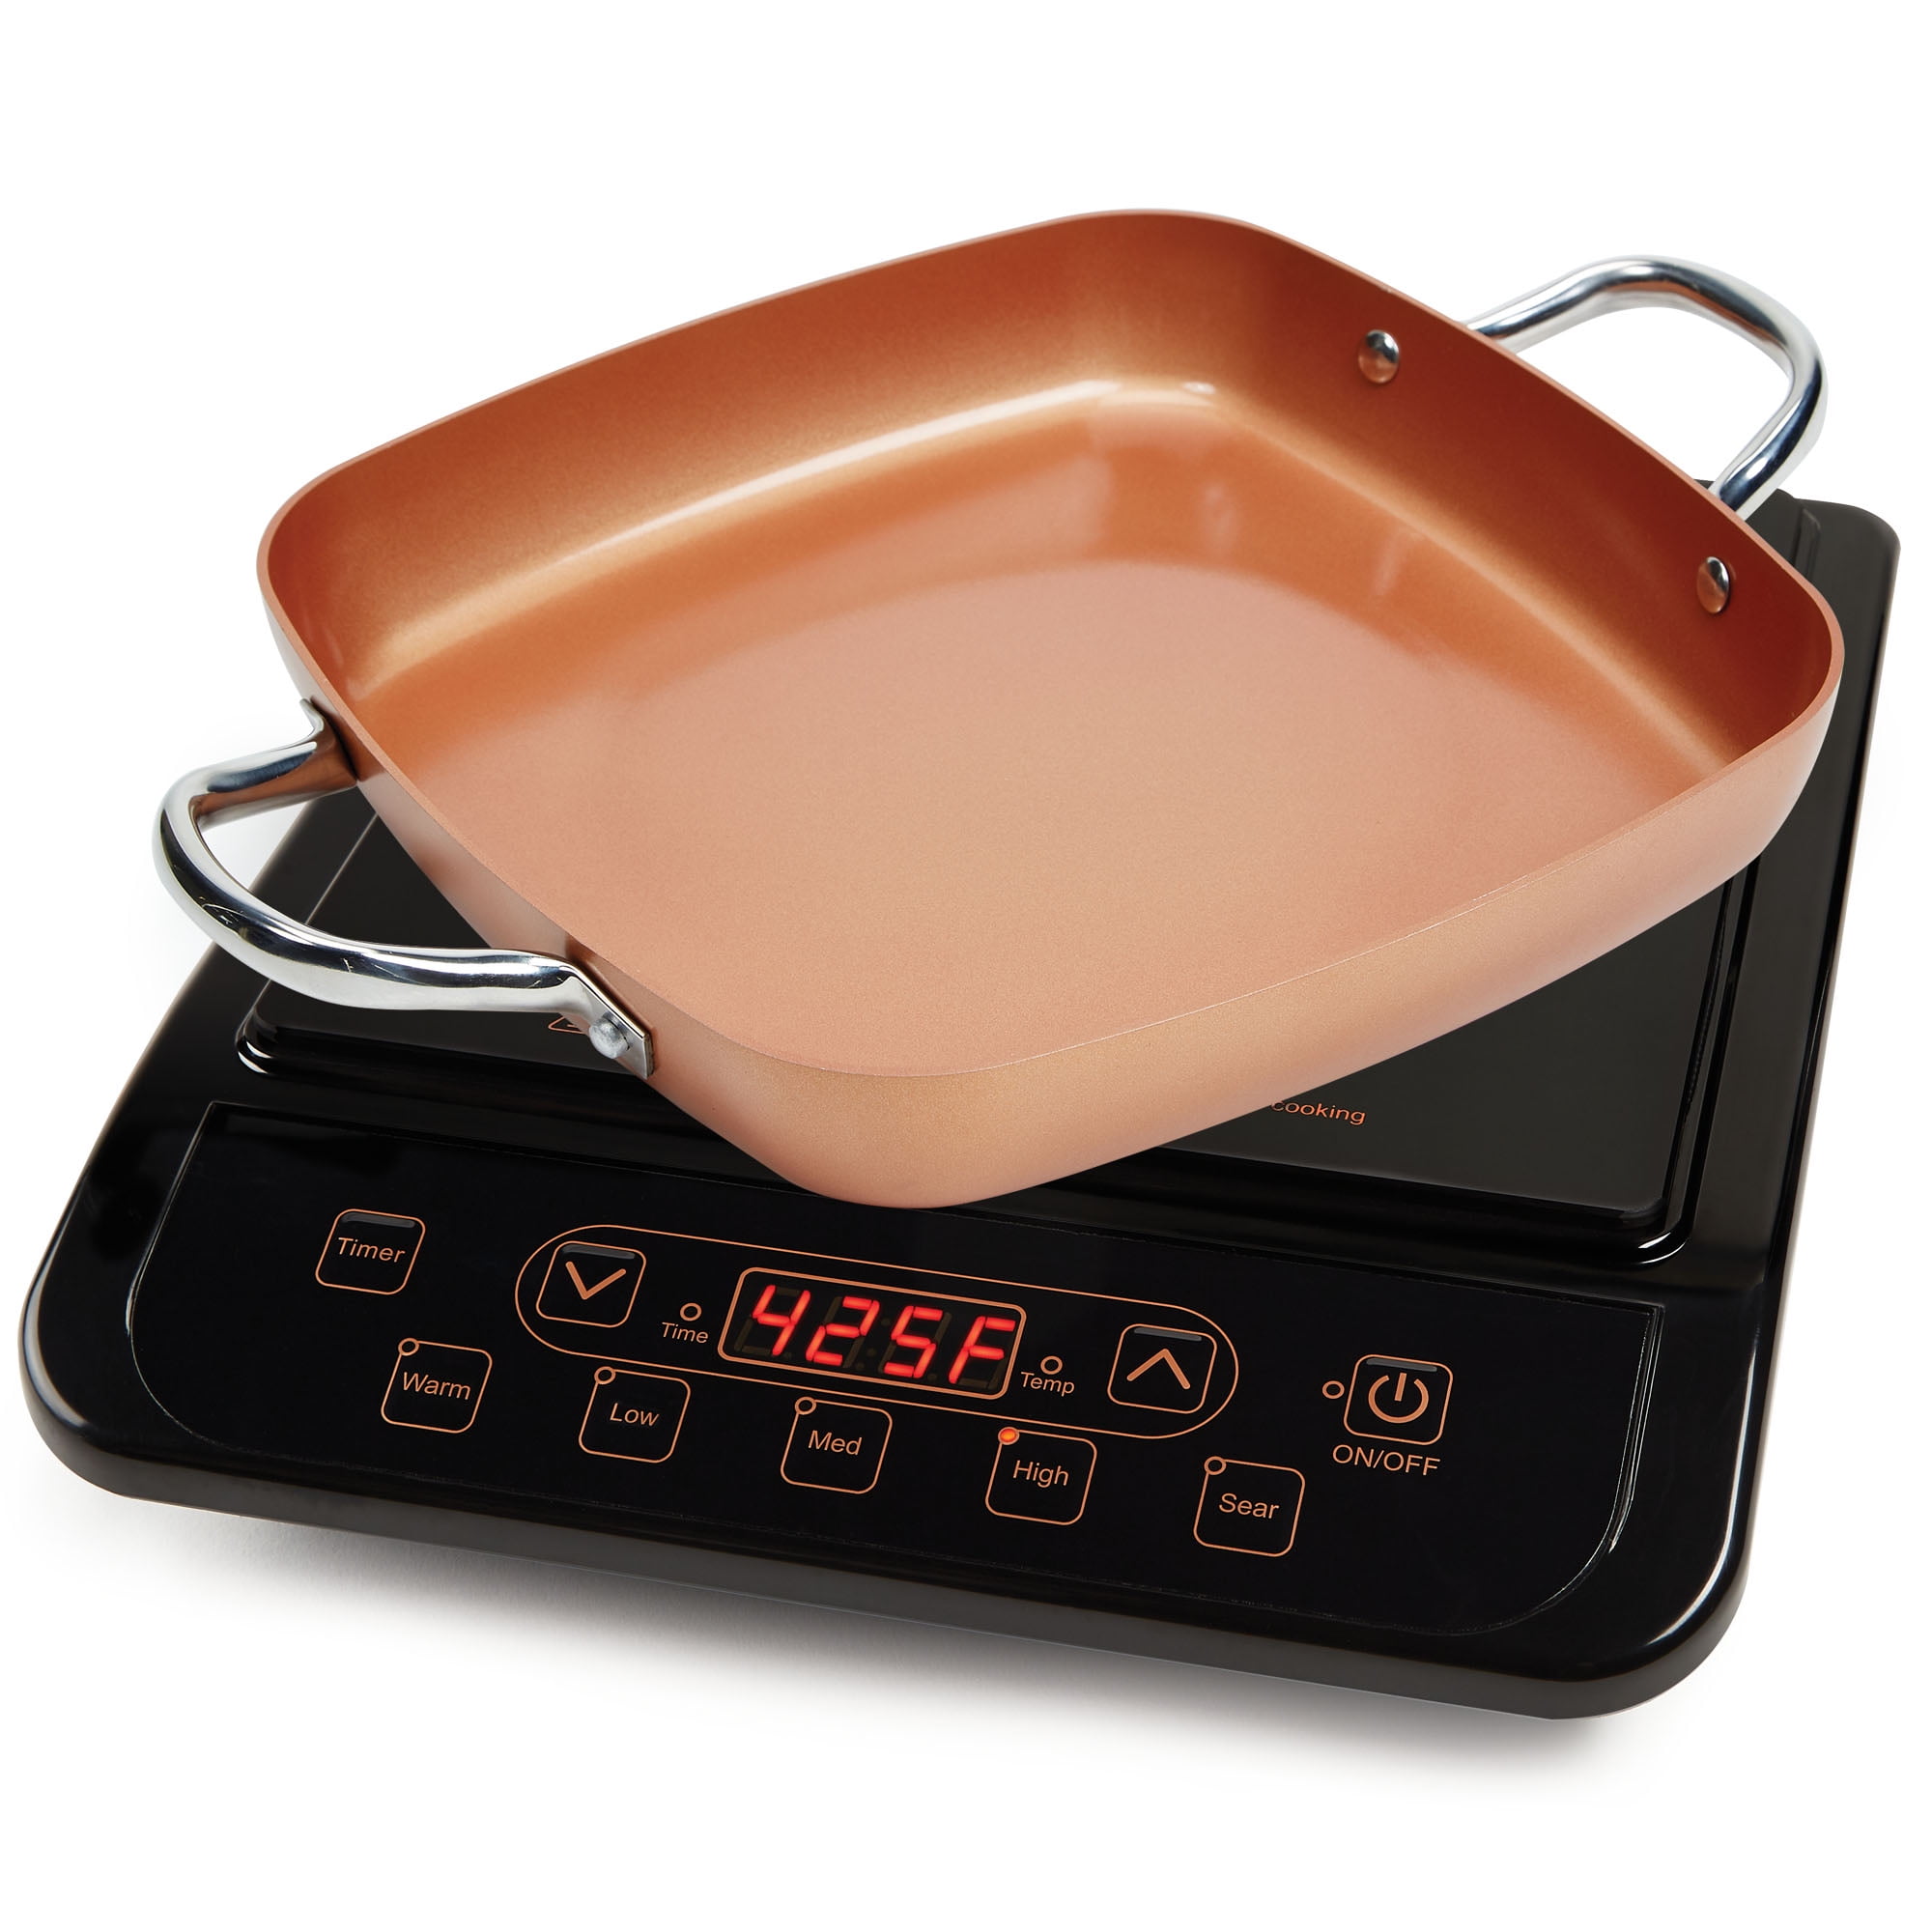 copper chef pan set 10 piece